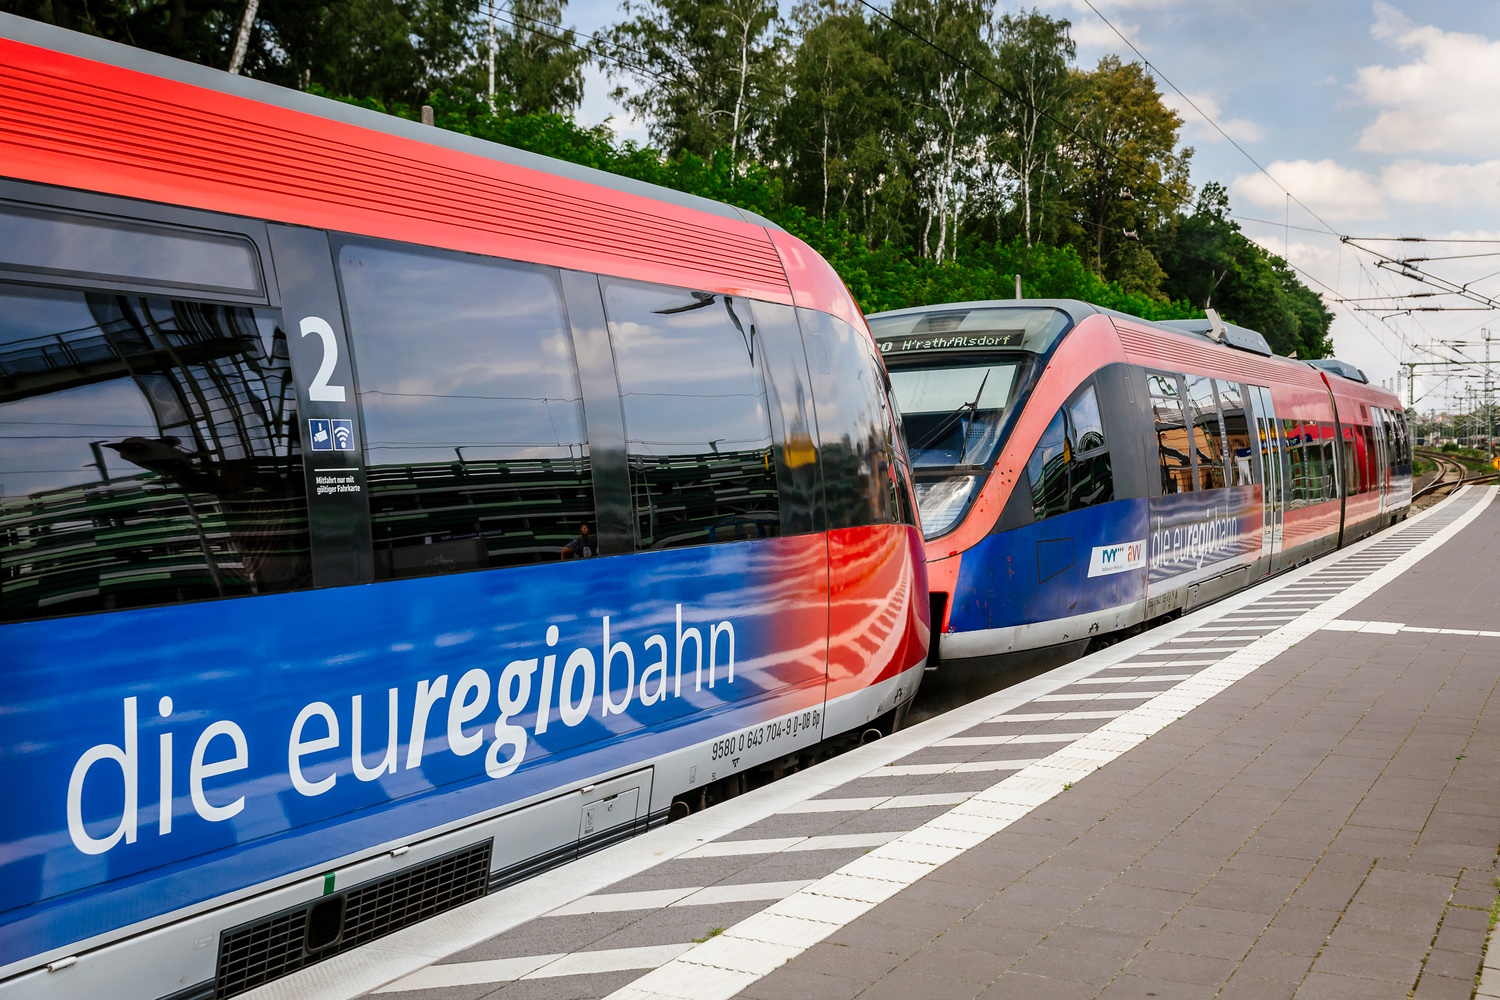 RB 20 euregiobahn am Bahnsteig (Foto: Smilla Dankert)